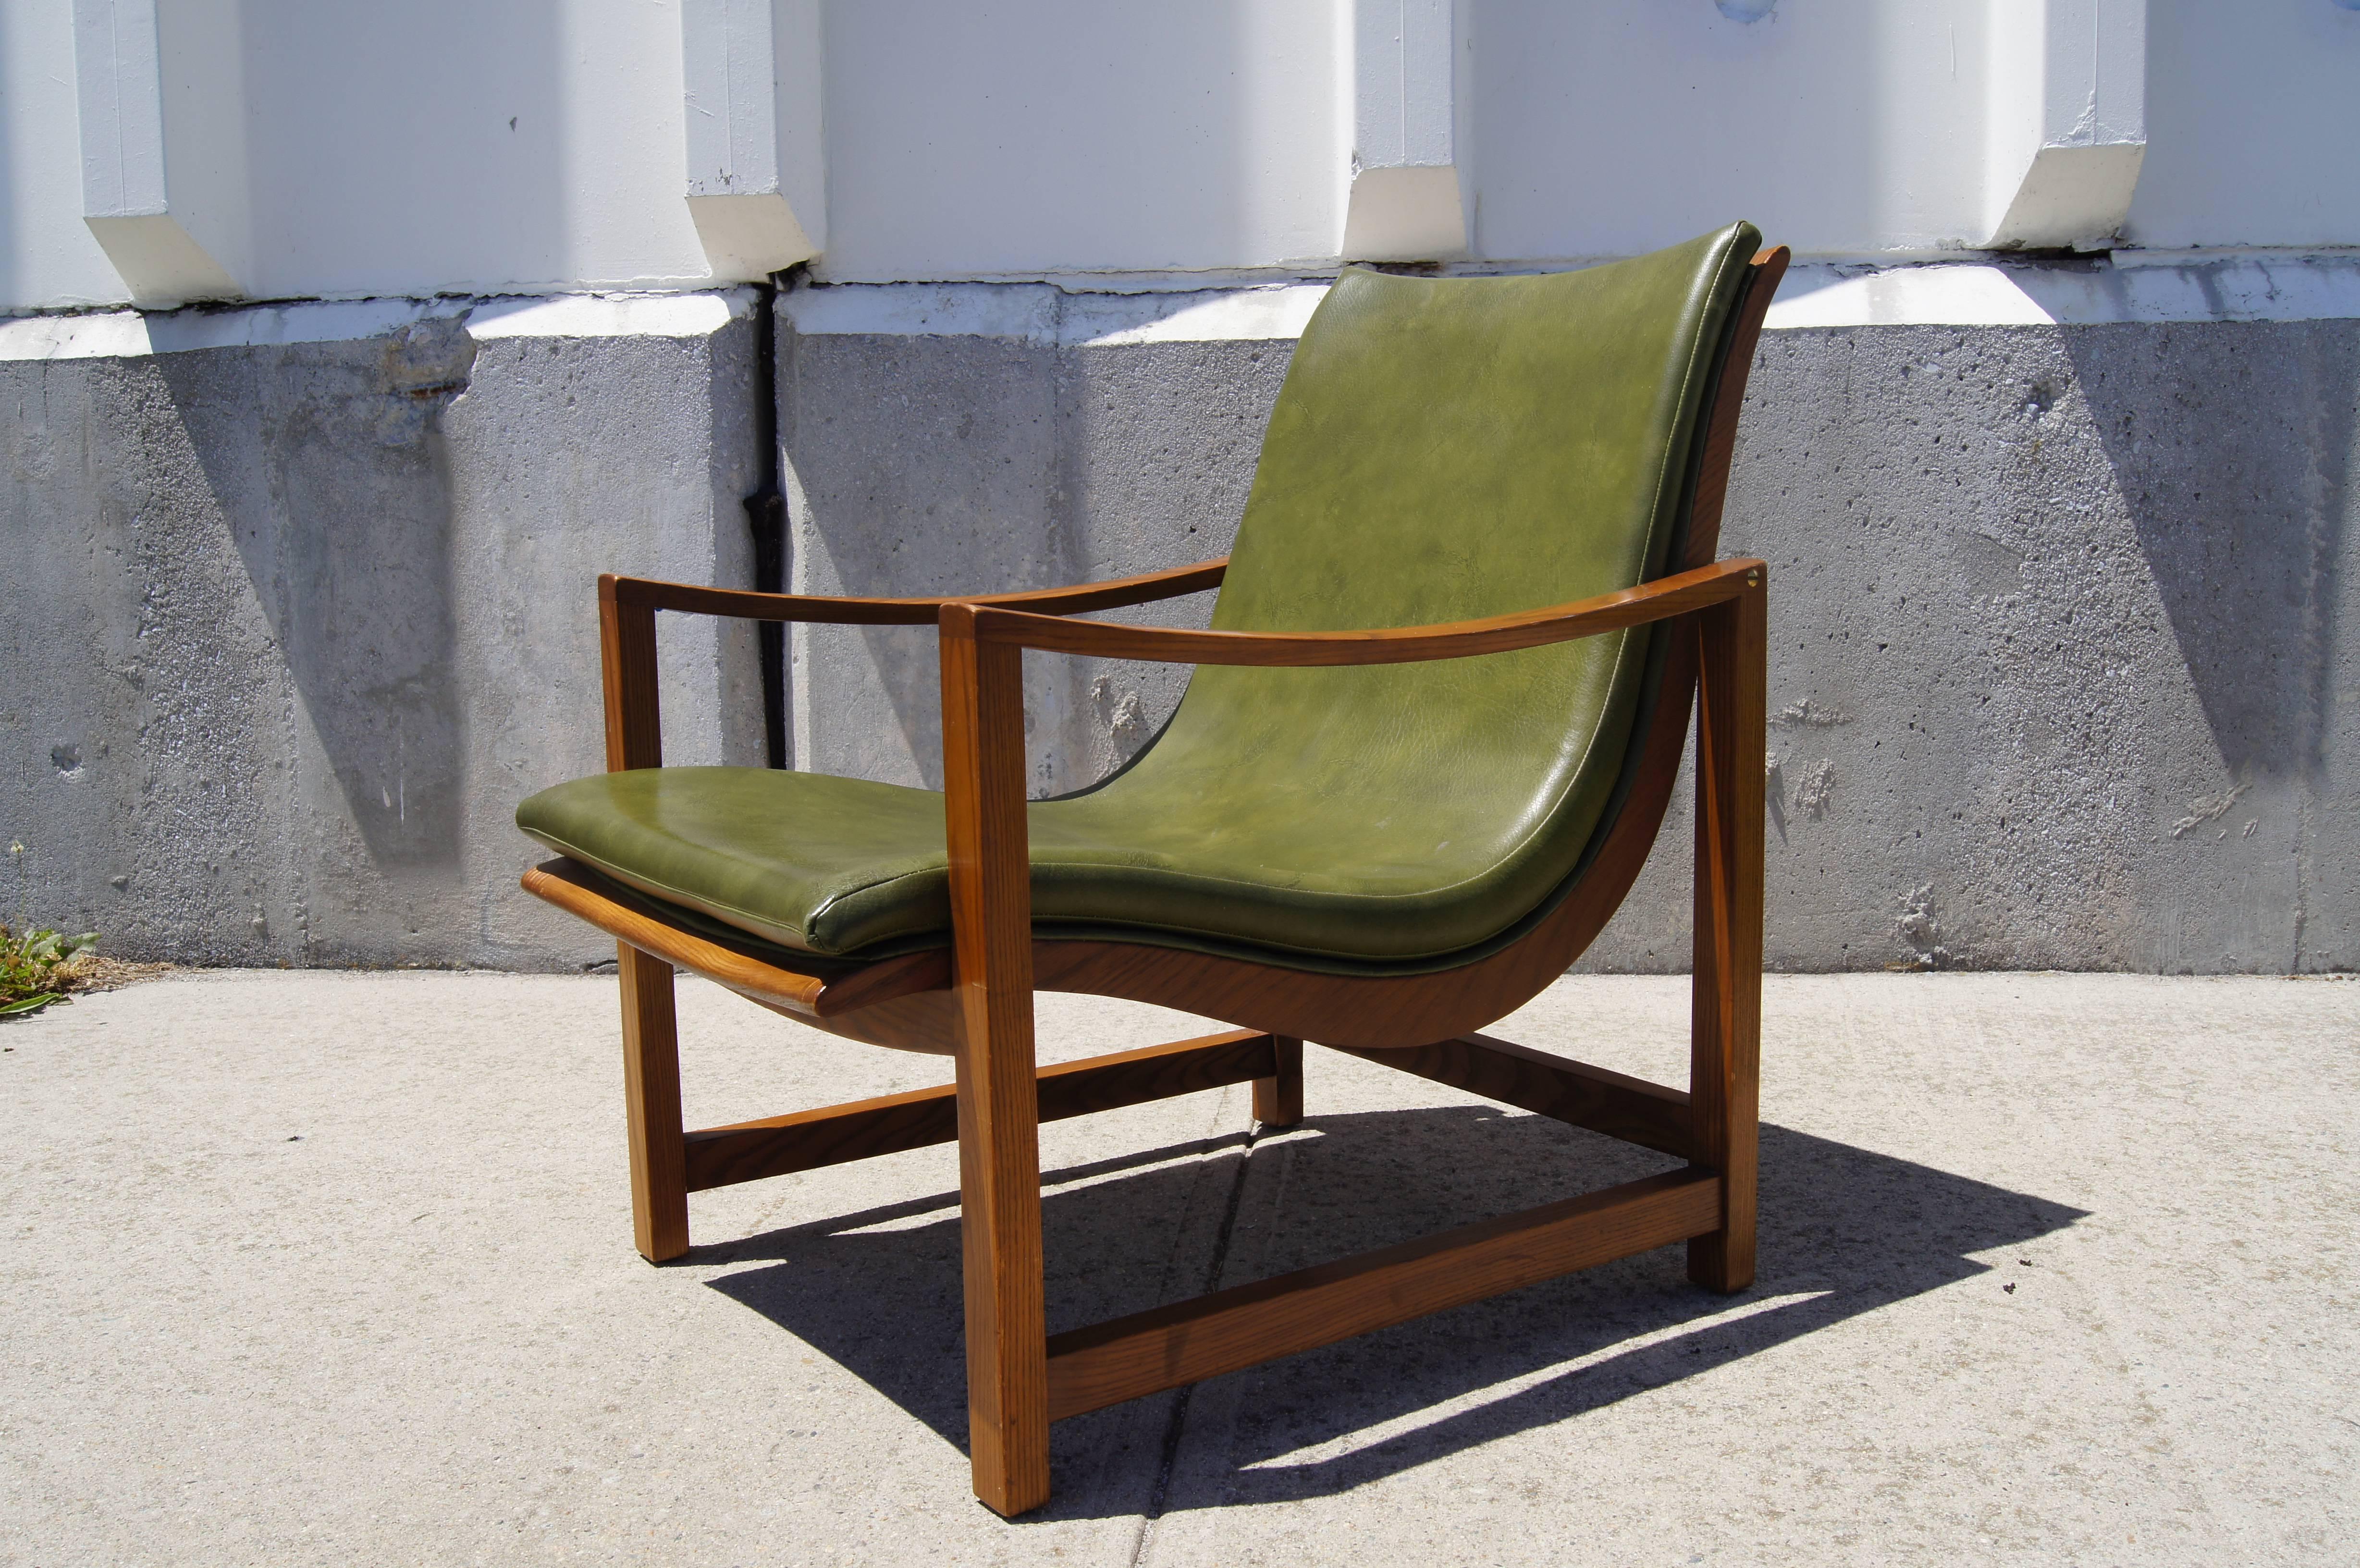 Cette chaise longue rarement vue, conçue par Edward Wormley pour Dunbar, place un siège en vinyle gaufré en cuir vert dans un élégant cadre en frêne qui s'oppose à une base rectiligne avec des bras courbés.